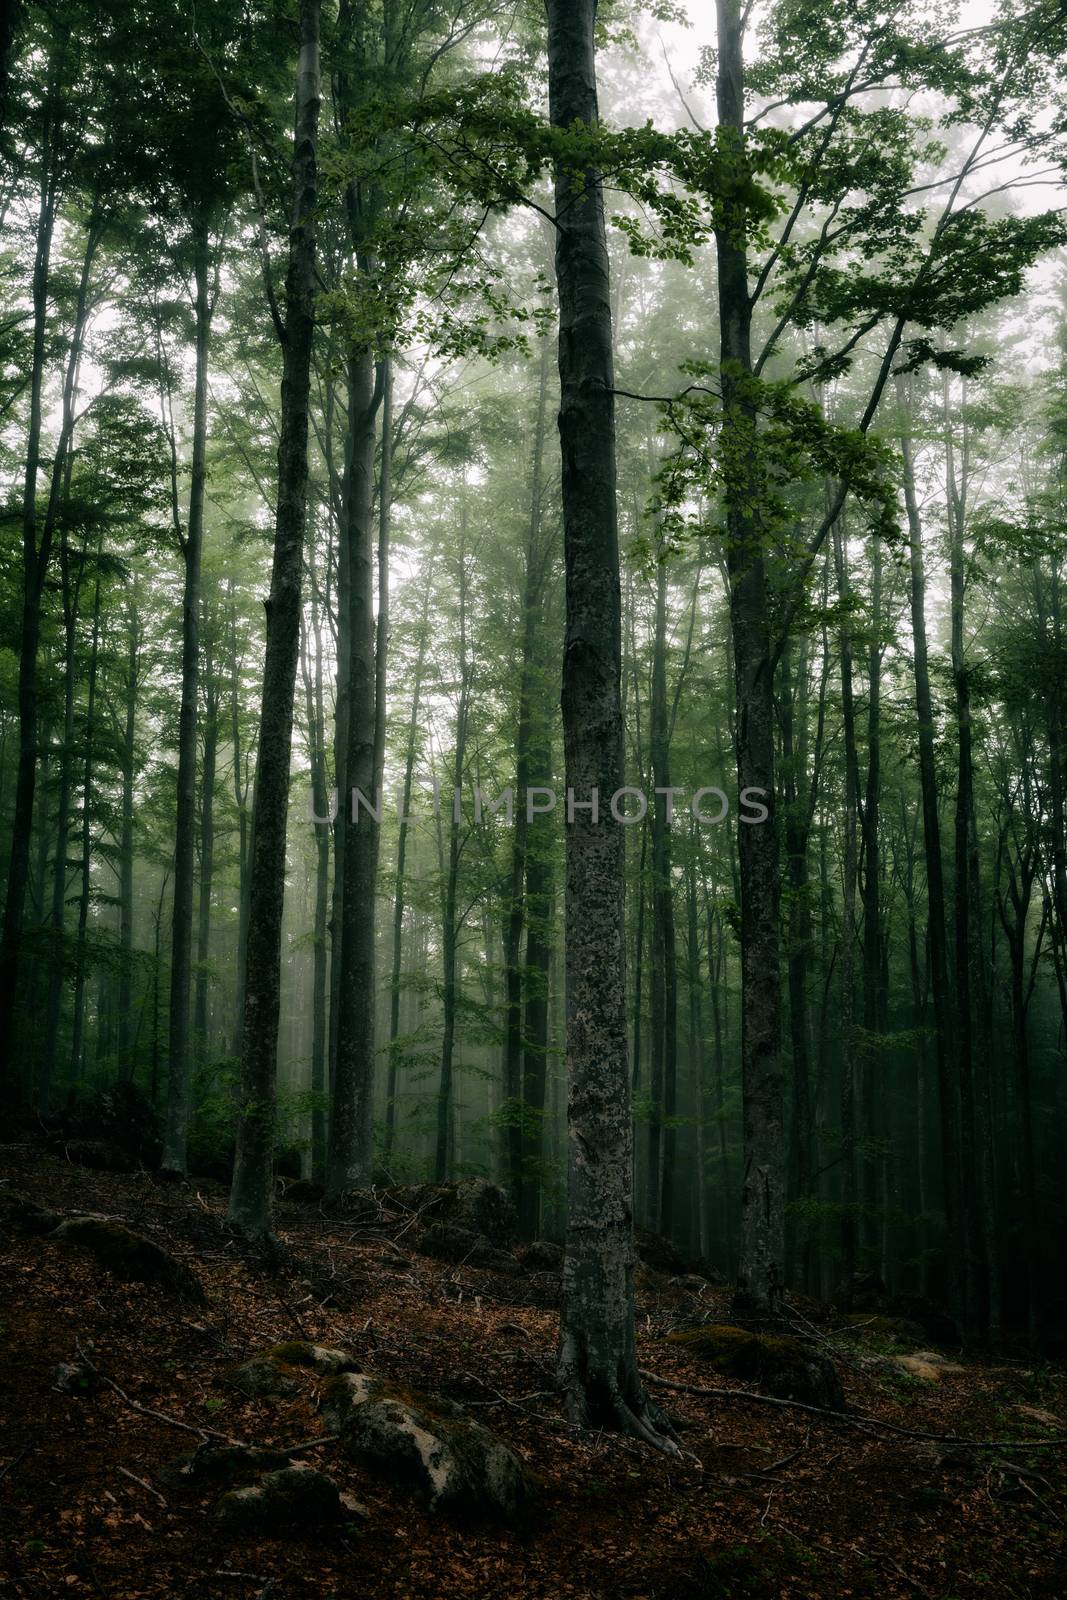 Mysterious dark forest in fog by LuigiMorbidelli